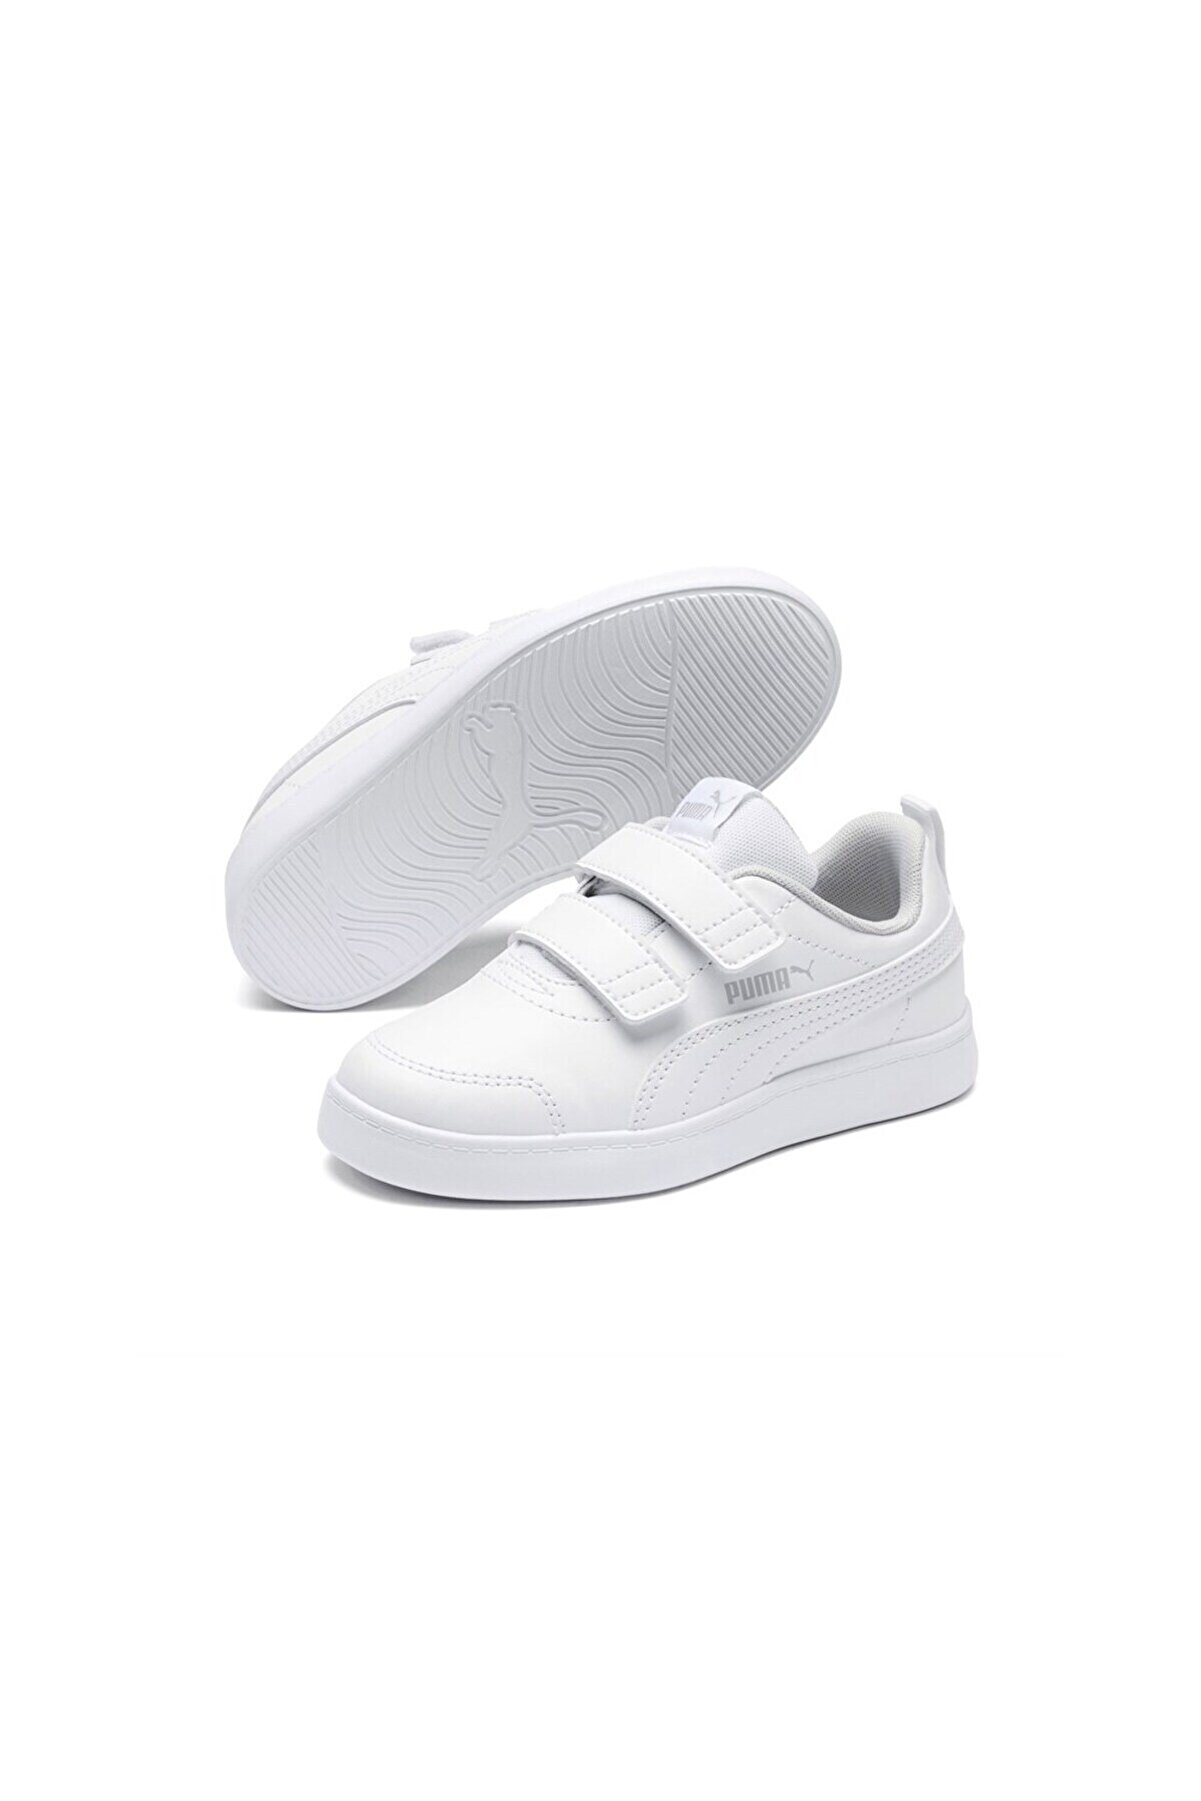 Puma Courtflex V2 V Ps Beyaz Çocuk Ayakkabısı 371543--04